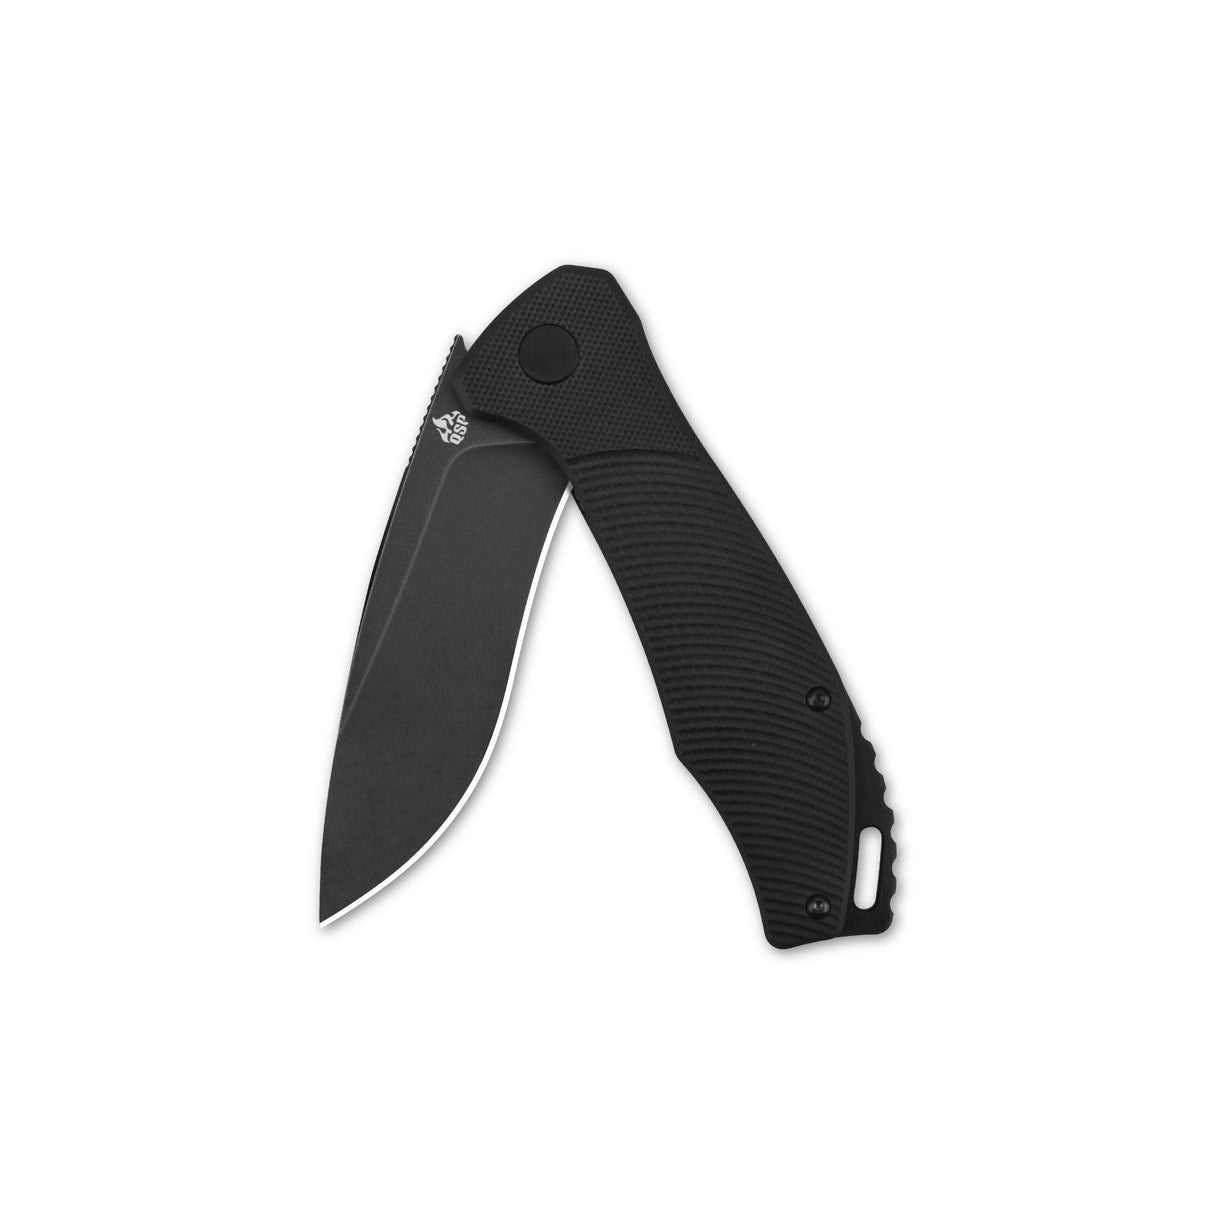 QSP Raven Liner Lock Pocket Knife D2 Blade Black G10 Handle